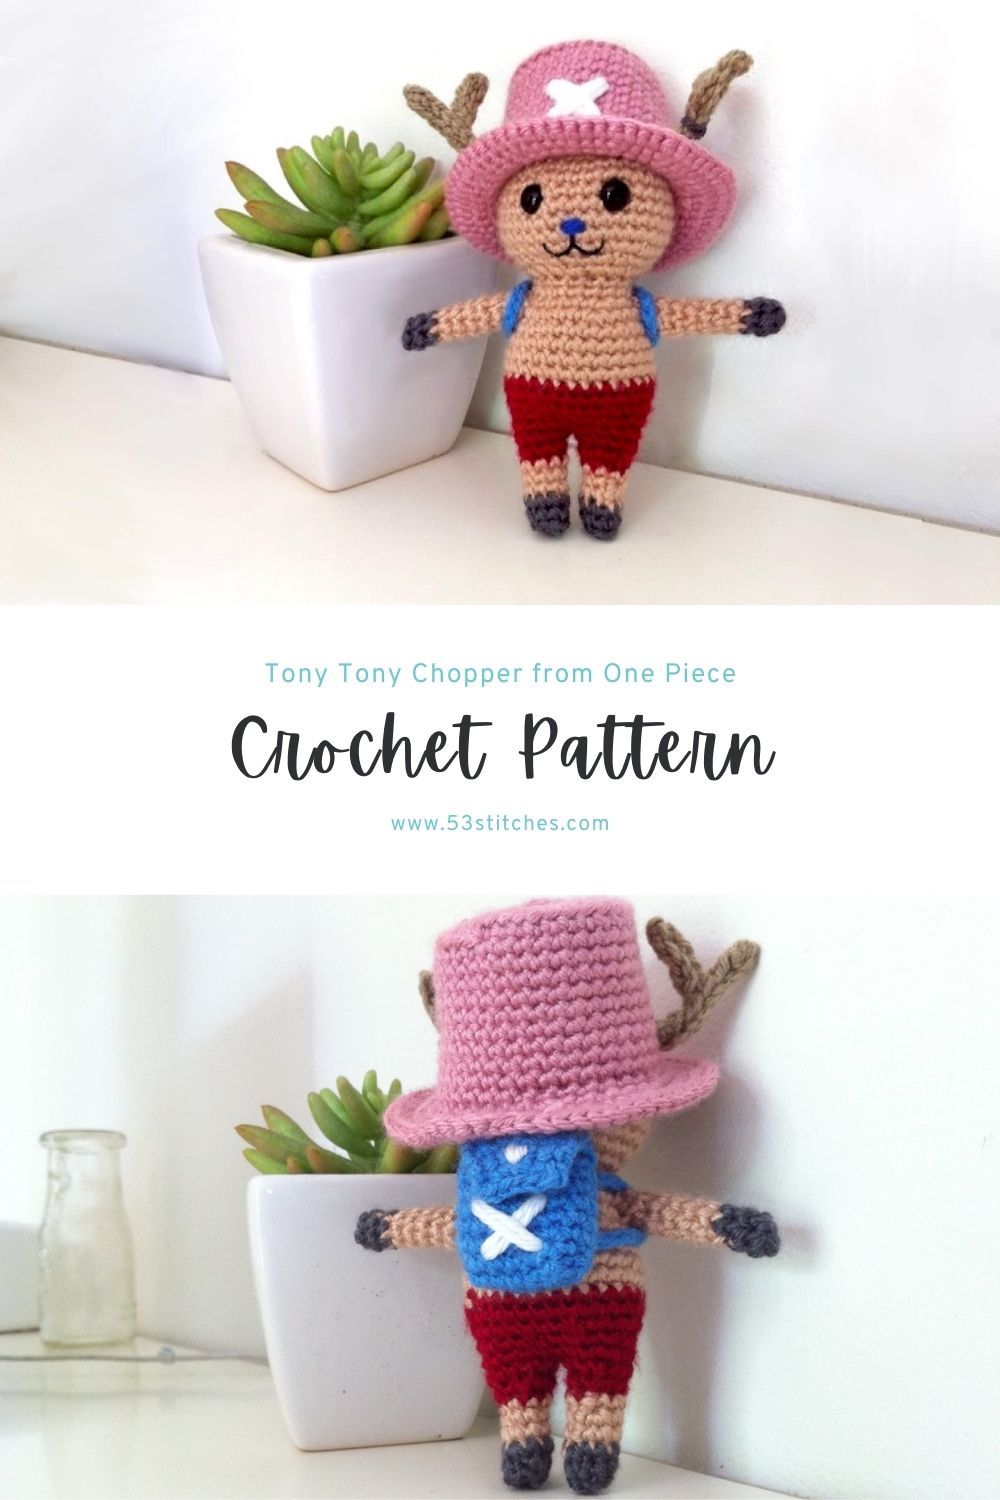 Chopper from One Piece crochet pattern